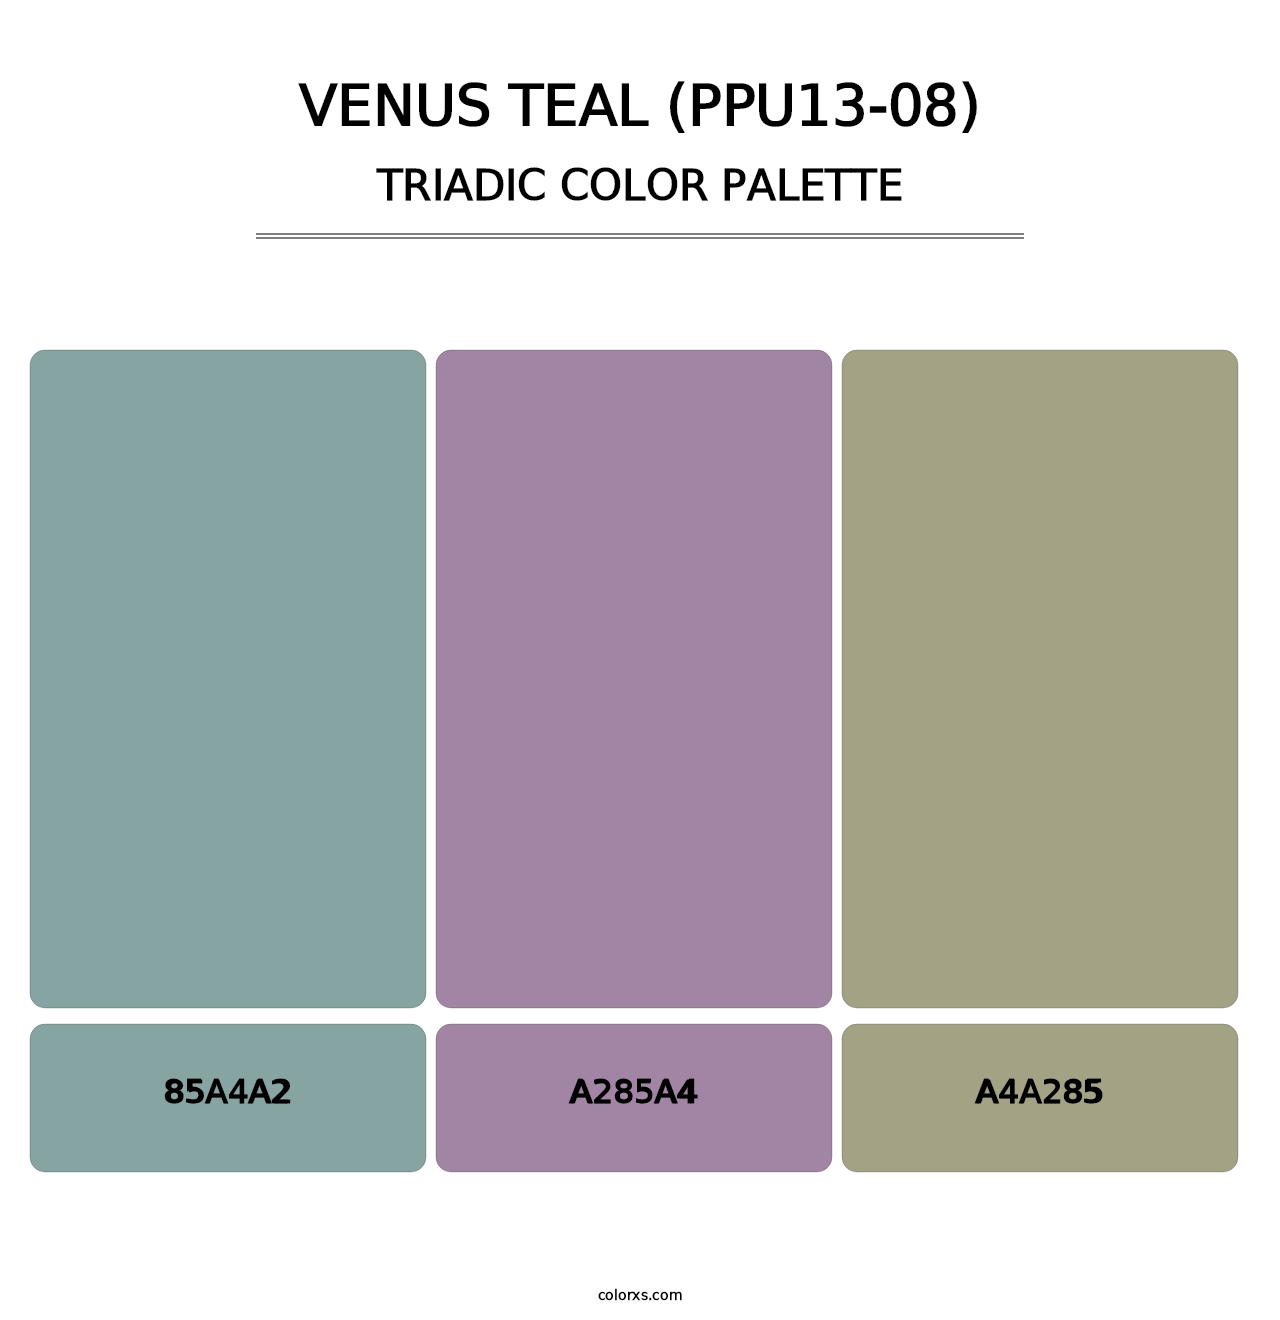 Venus Teal (PPU13-08) - Triadic Color Palette